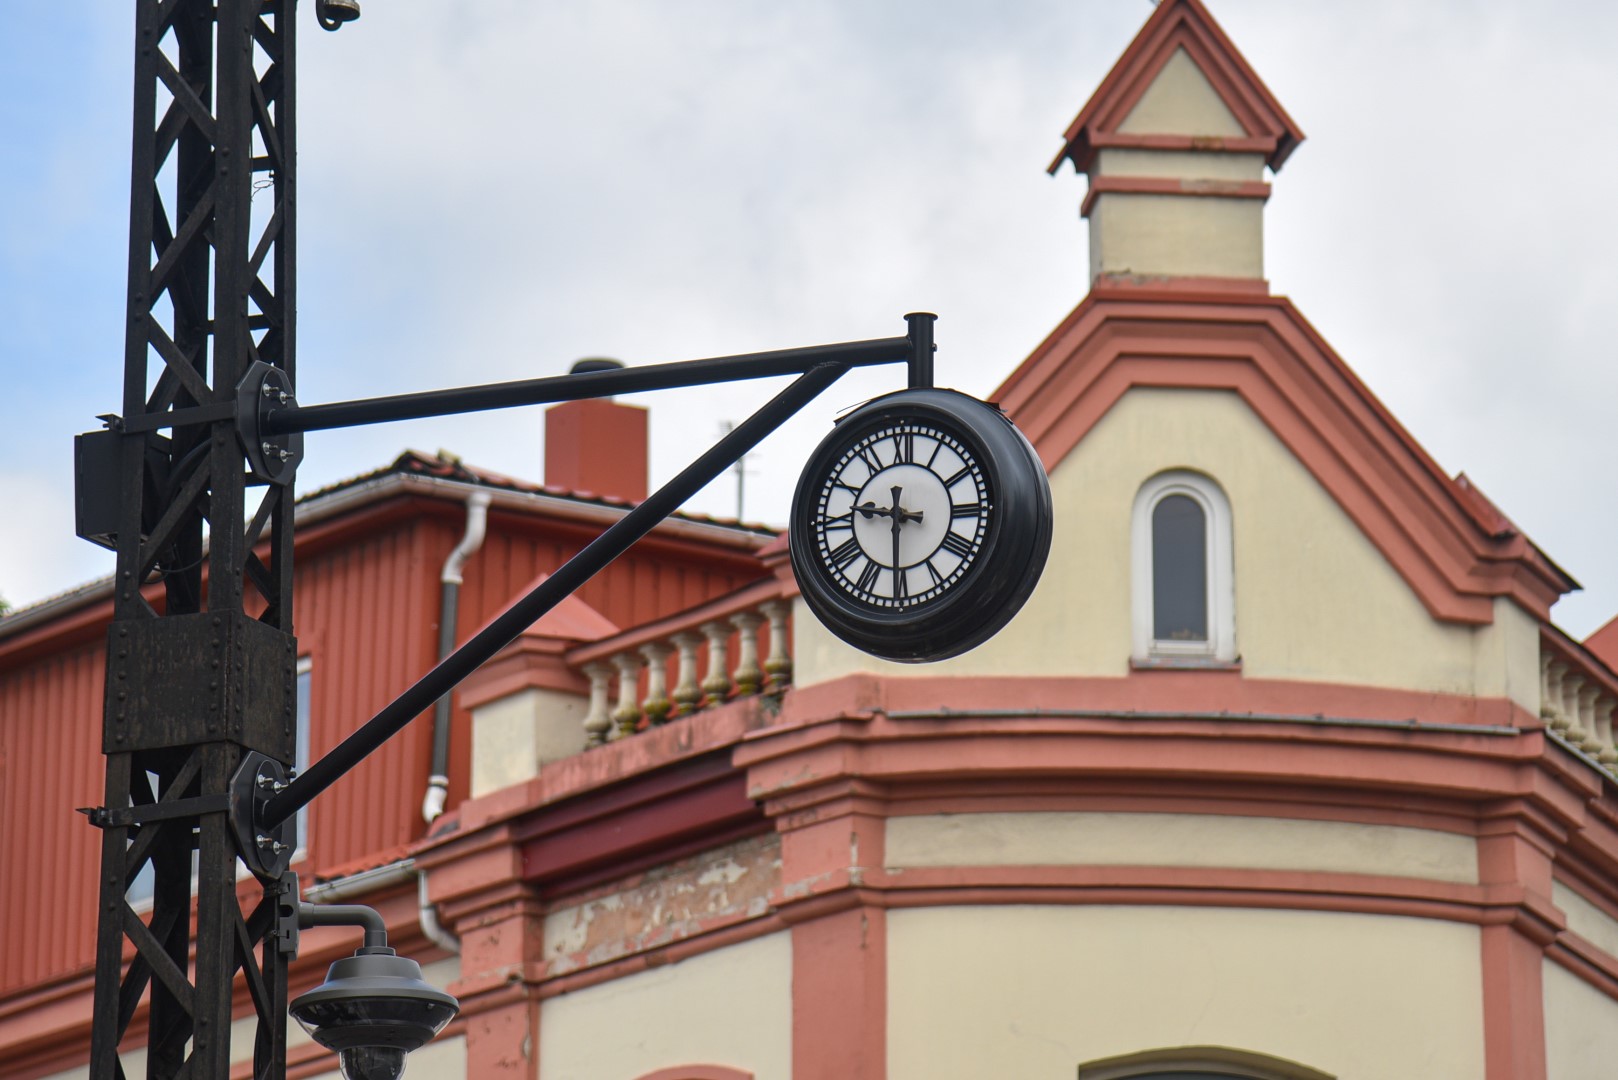 Stilingas Panevėžio akcentas – seną istoriją turintis laikrodis ties Respublikos ir Vasario 16-osios gatvių sankryža – nustojo tiksėti ir nežinia, kada bus atgaivintas.